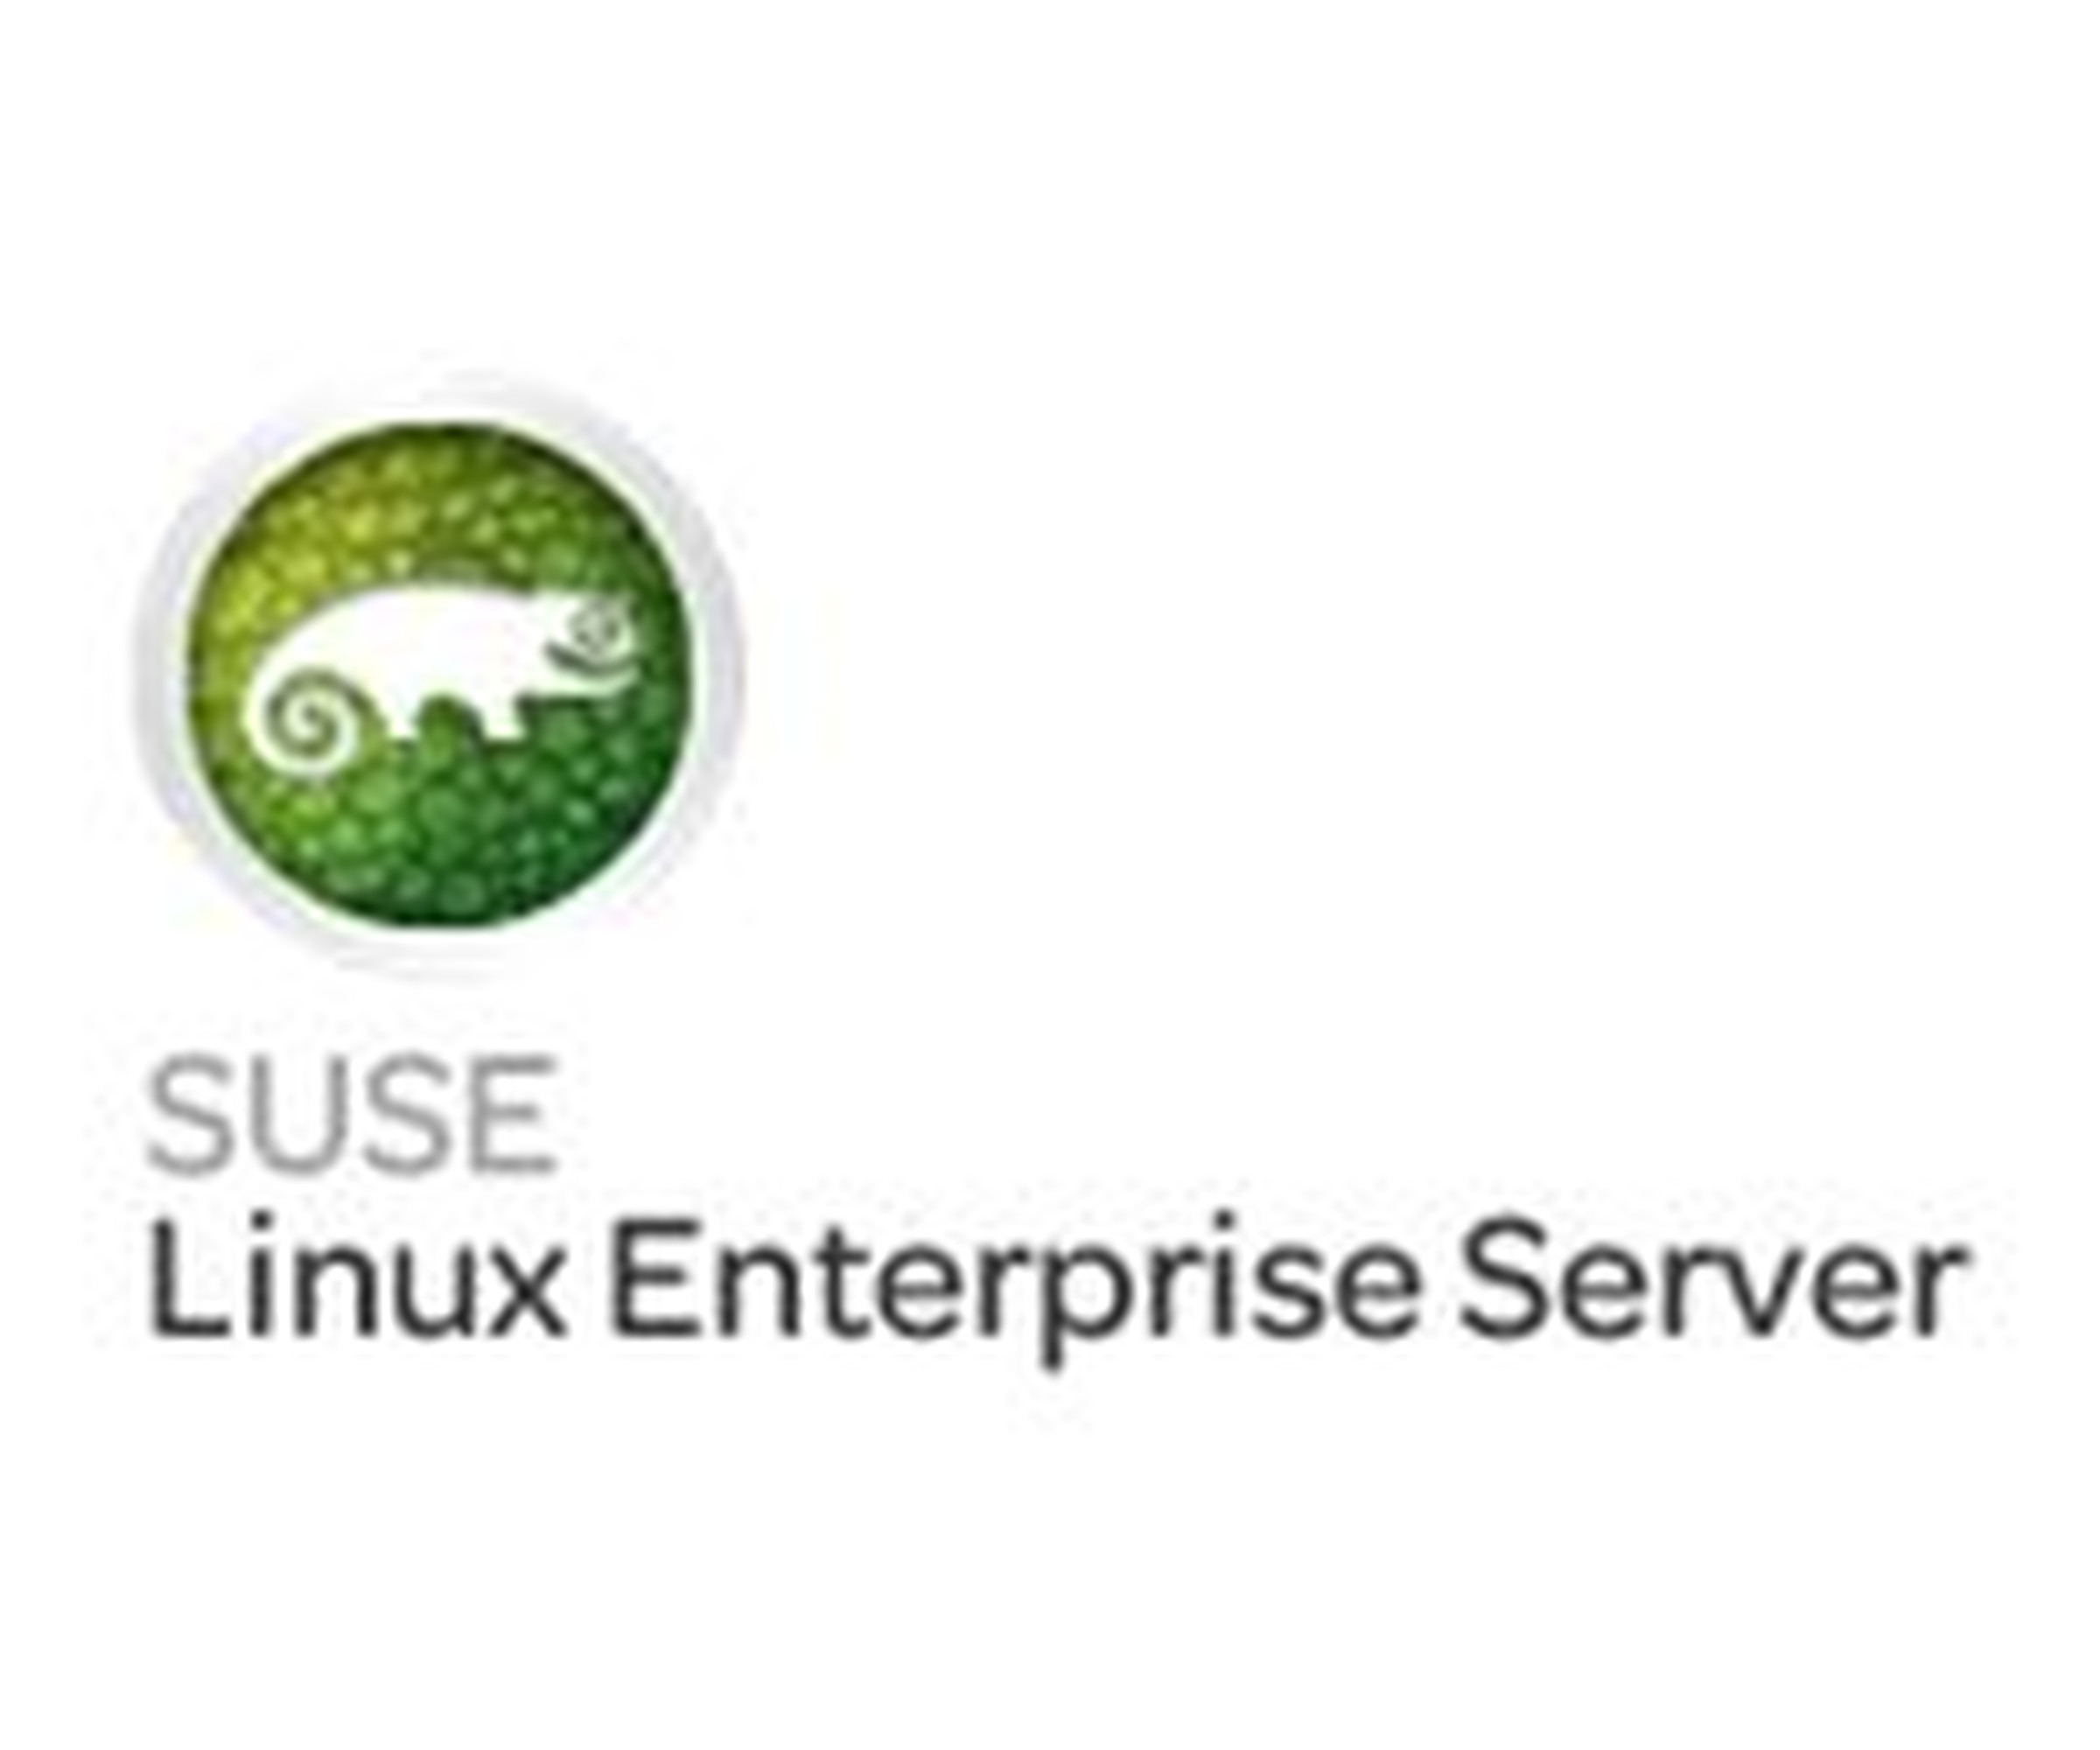 Fujitsu SuSE Linux Enterprise Server - Abonnement-Lizenz (3 Jahre)